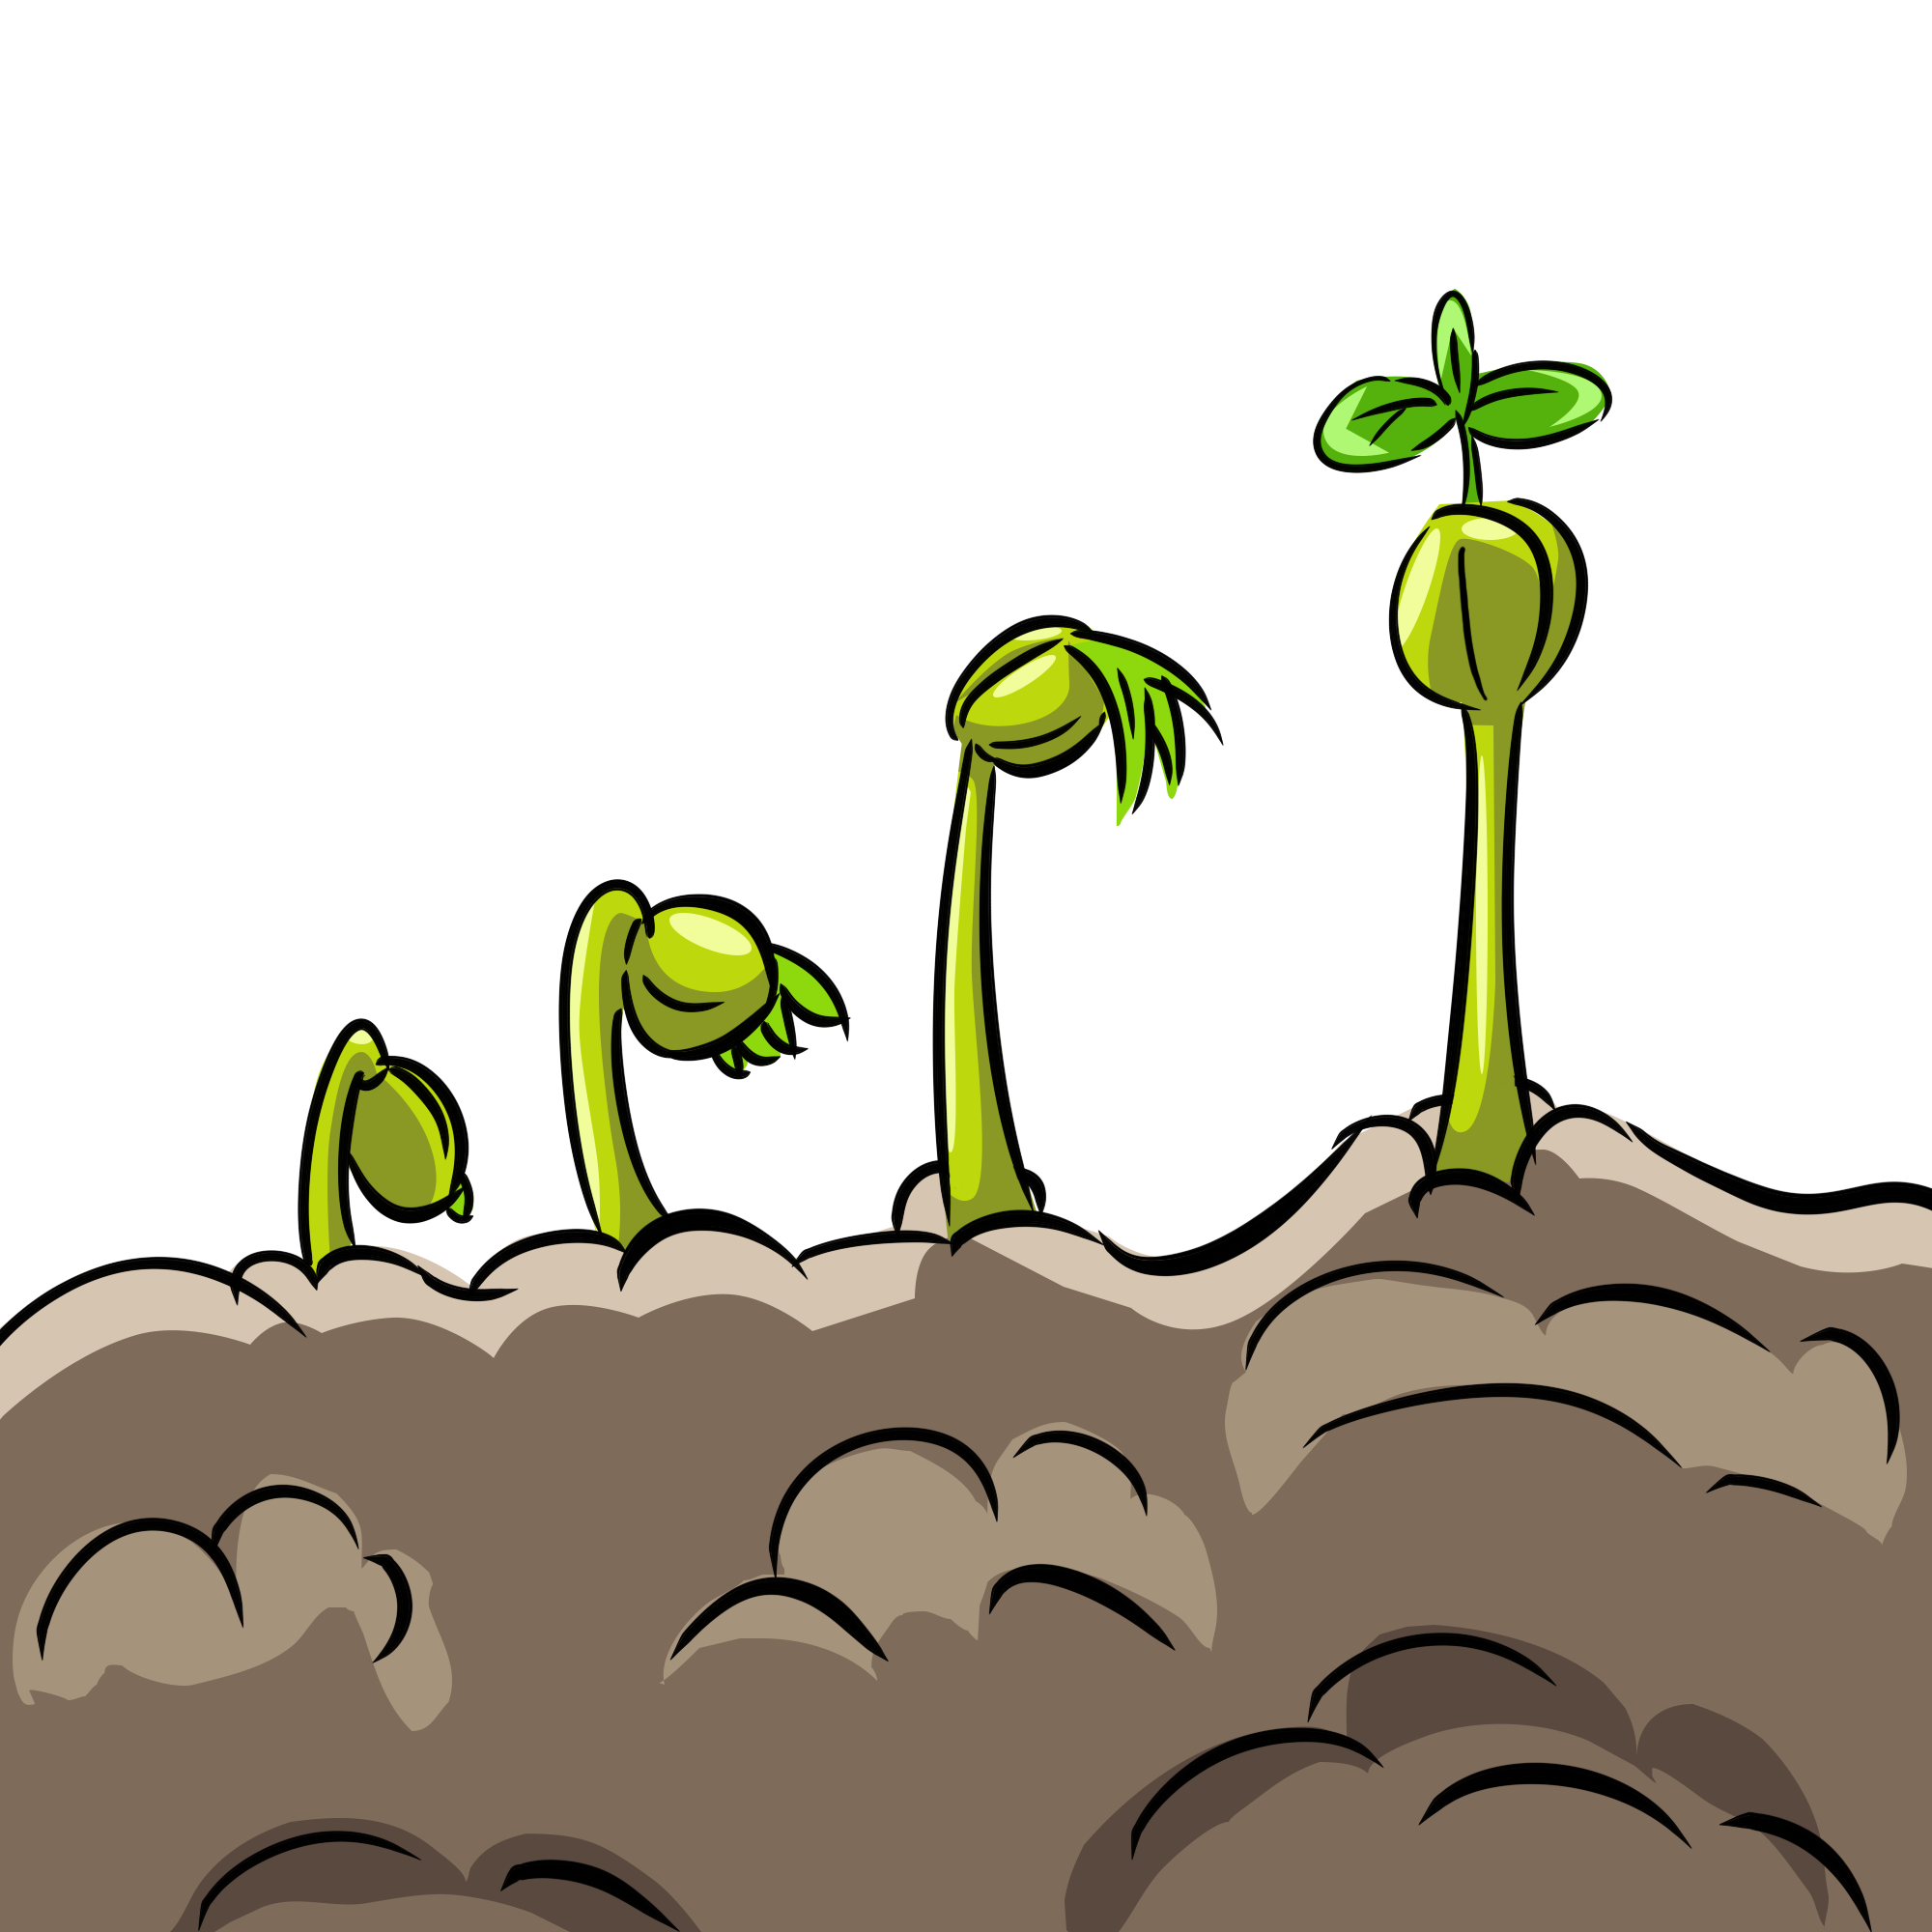 Pngtreethrive sprout sprout sprout sprout 5750309